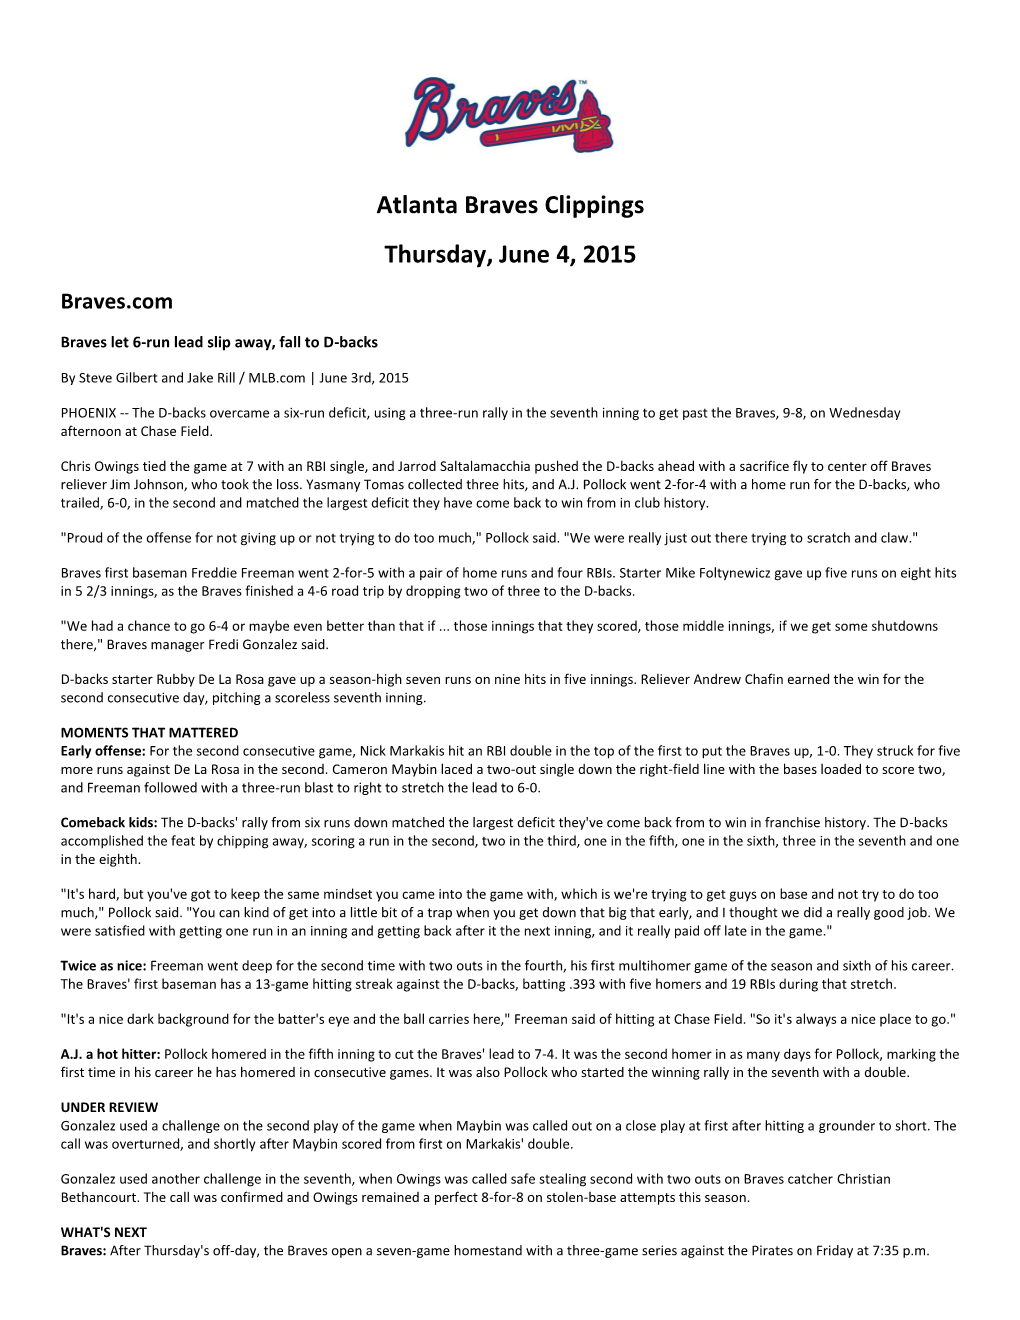 Atlanta Braves Clippings Thursday, June 4, 2015 Braves.Com